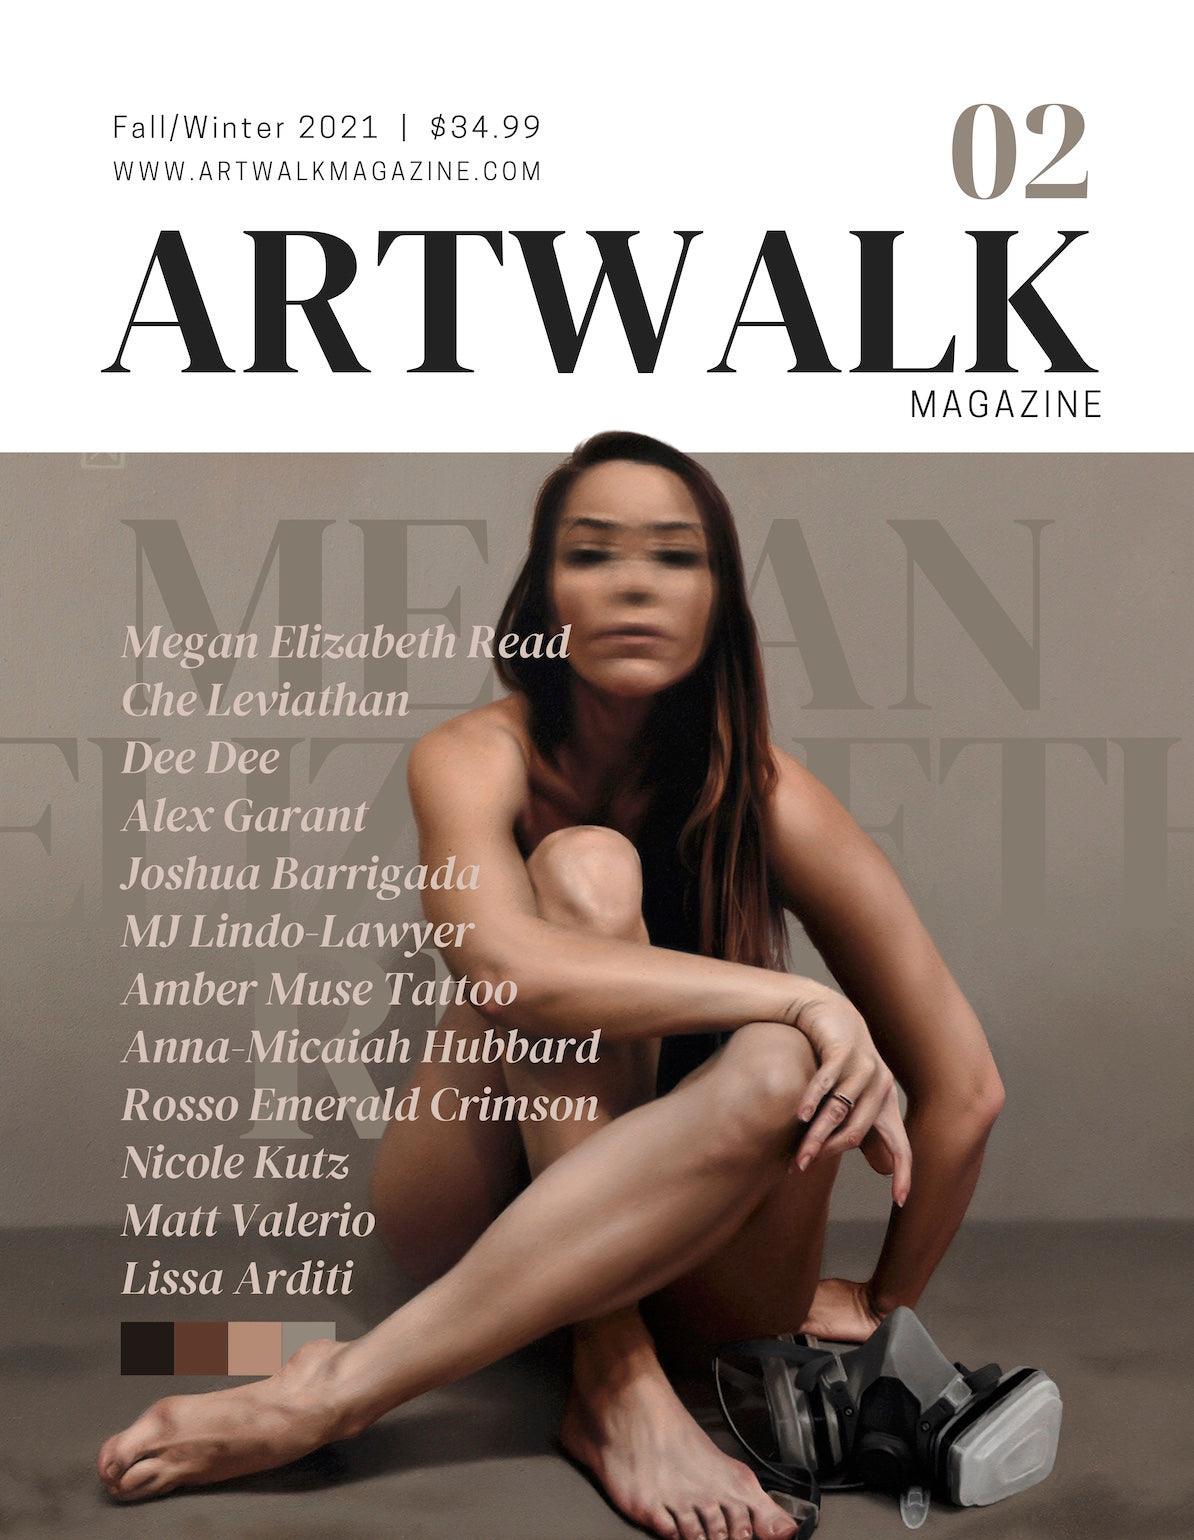 Artwalk Magazine Issue 02